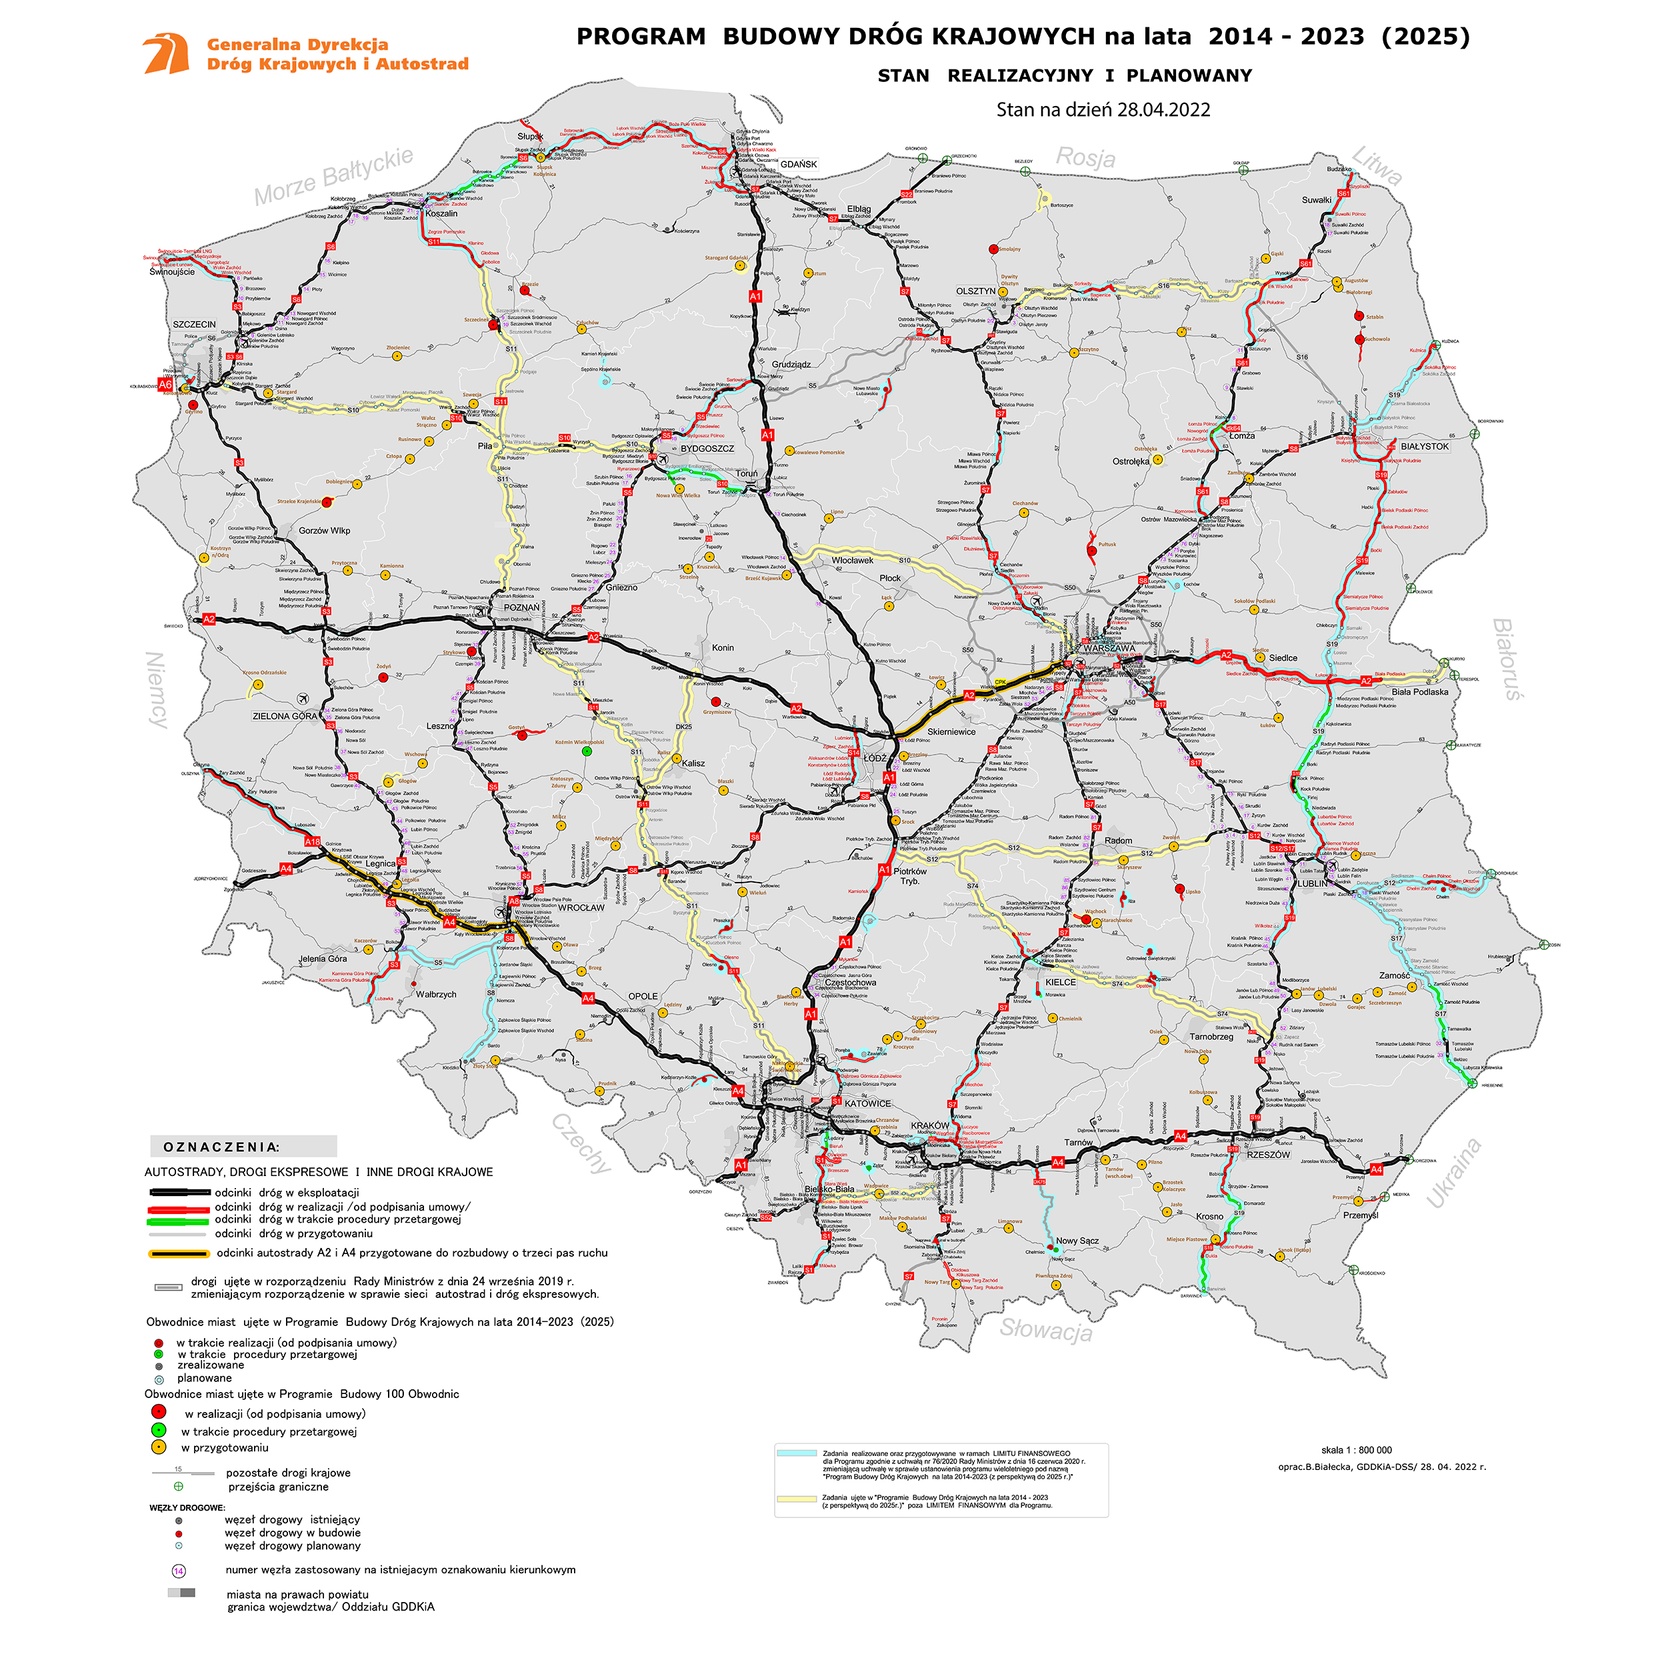 Program budowy dróg krajowych i autostrad